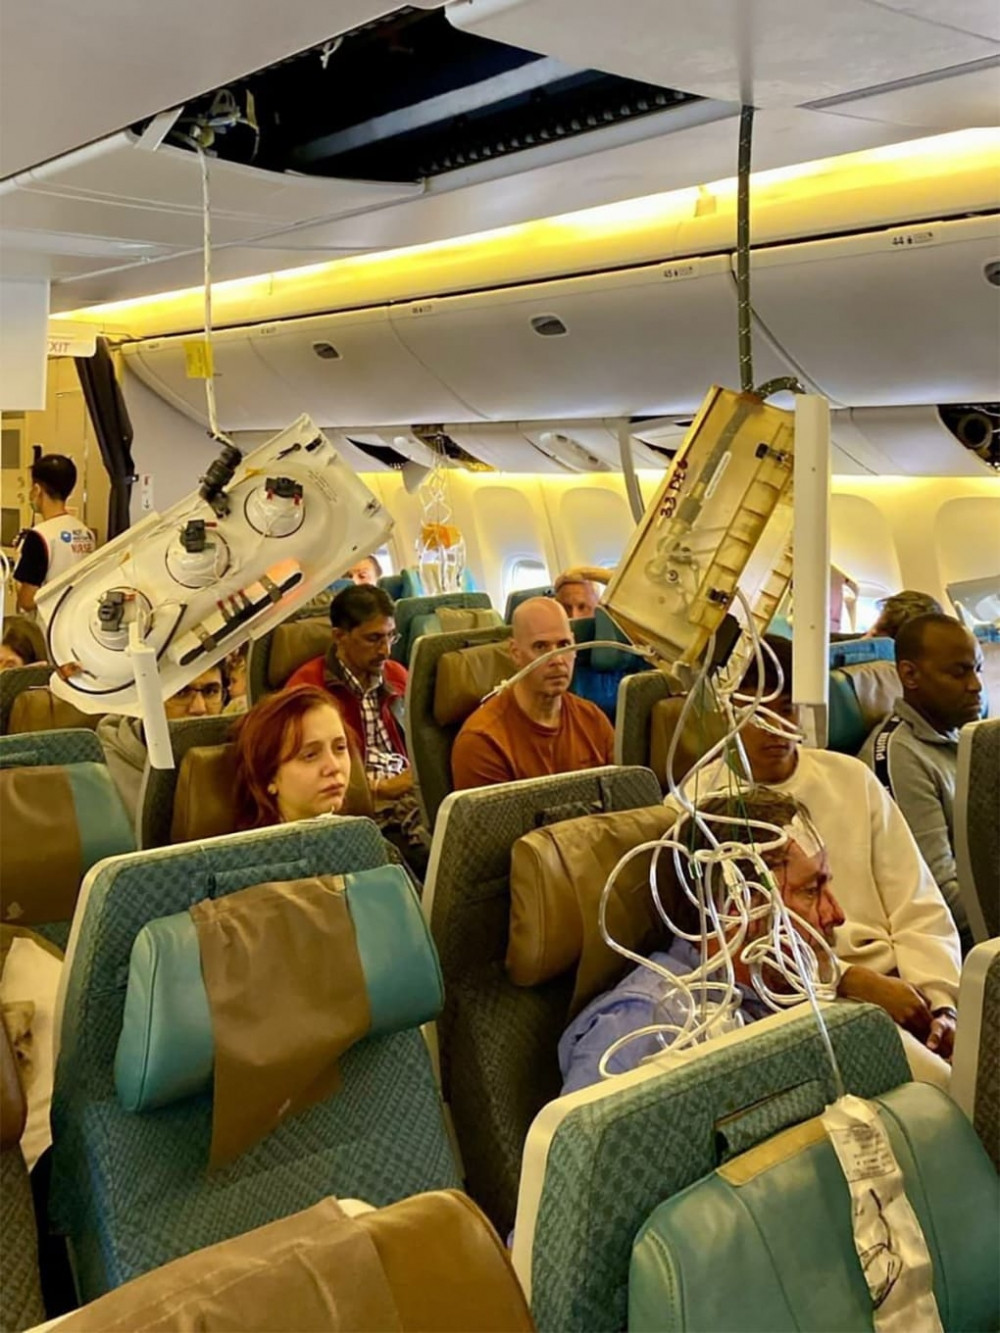 Giây phút kinh hoàng như ‘địa ngục’ trong chiếc Boeing gặp nhiễu động: Vật sắc nhọn ‘bay tự do’, hành khách ‘máu chảy đầy mặt’